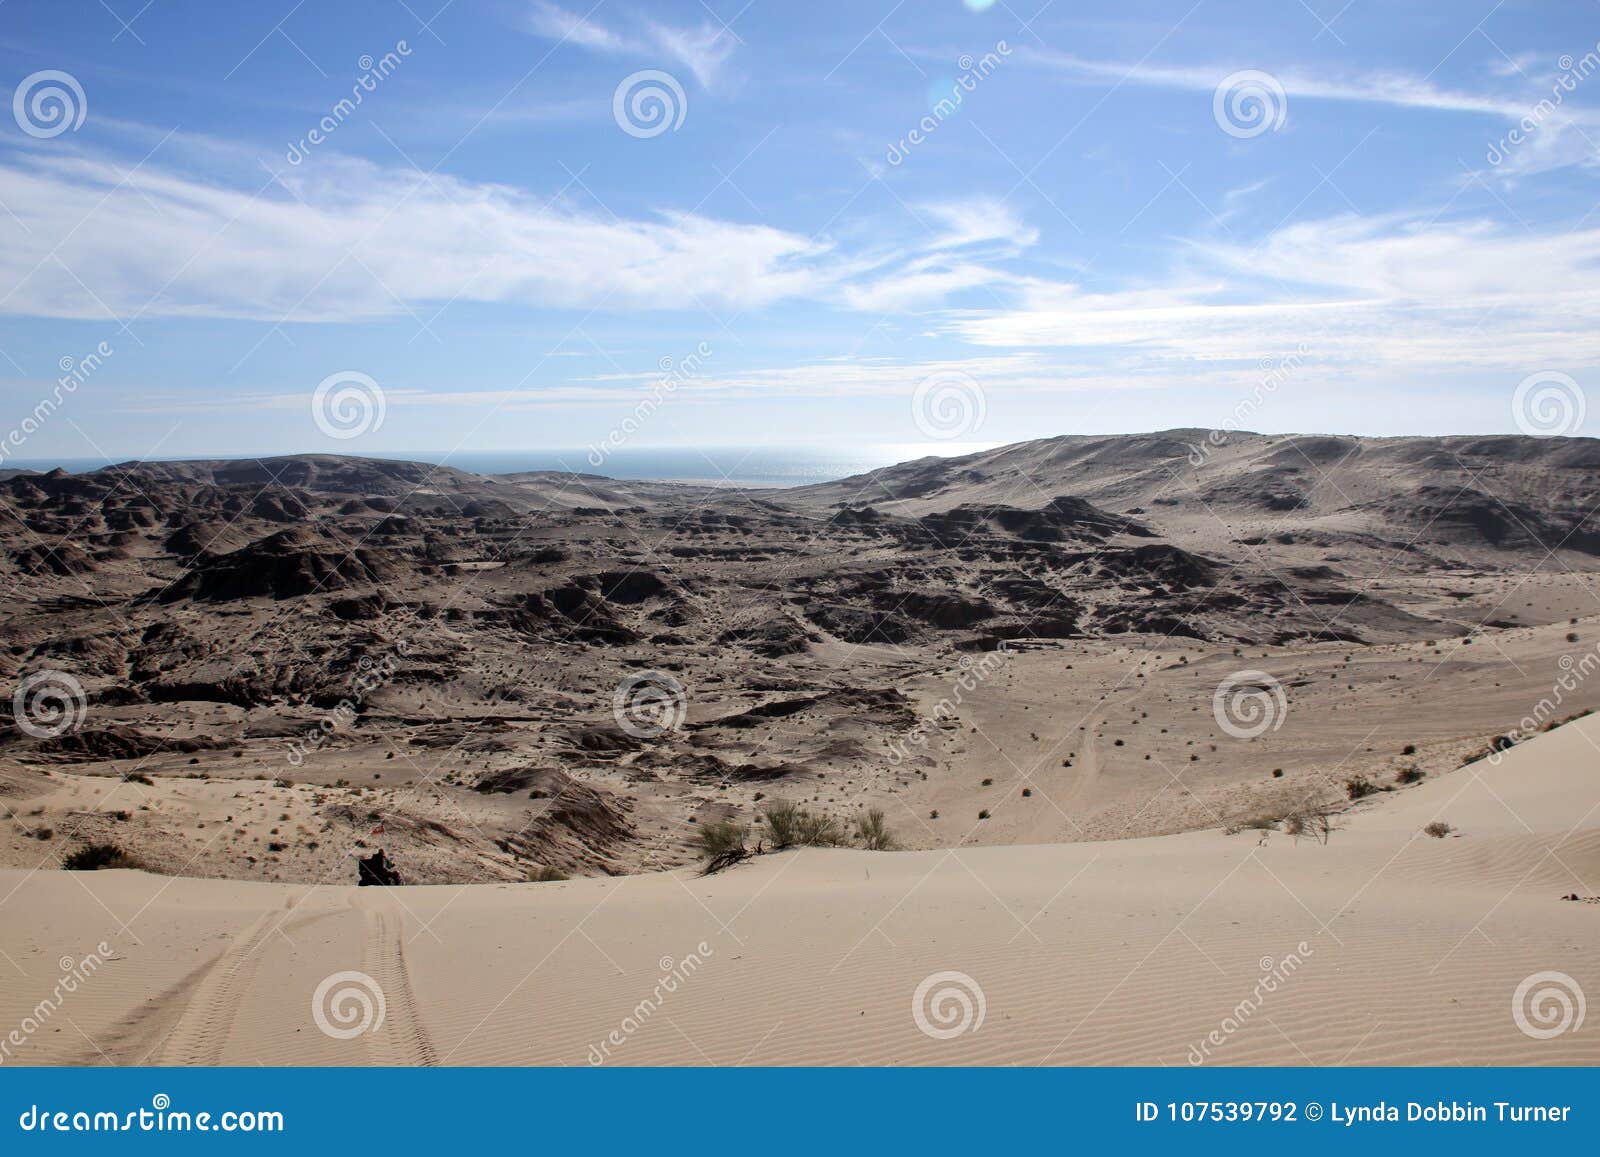 the desert hills around el golfo de santa clara, sonora, mexico.